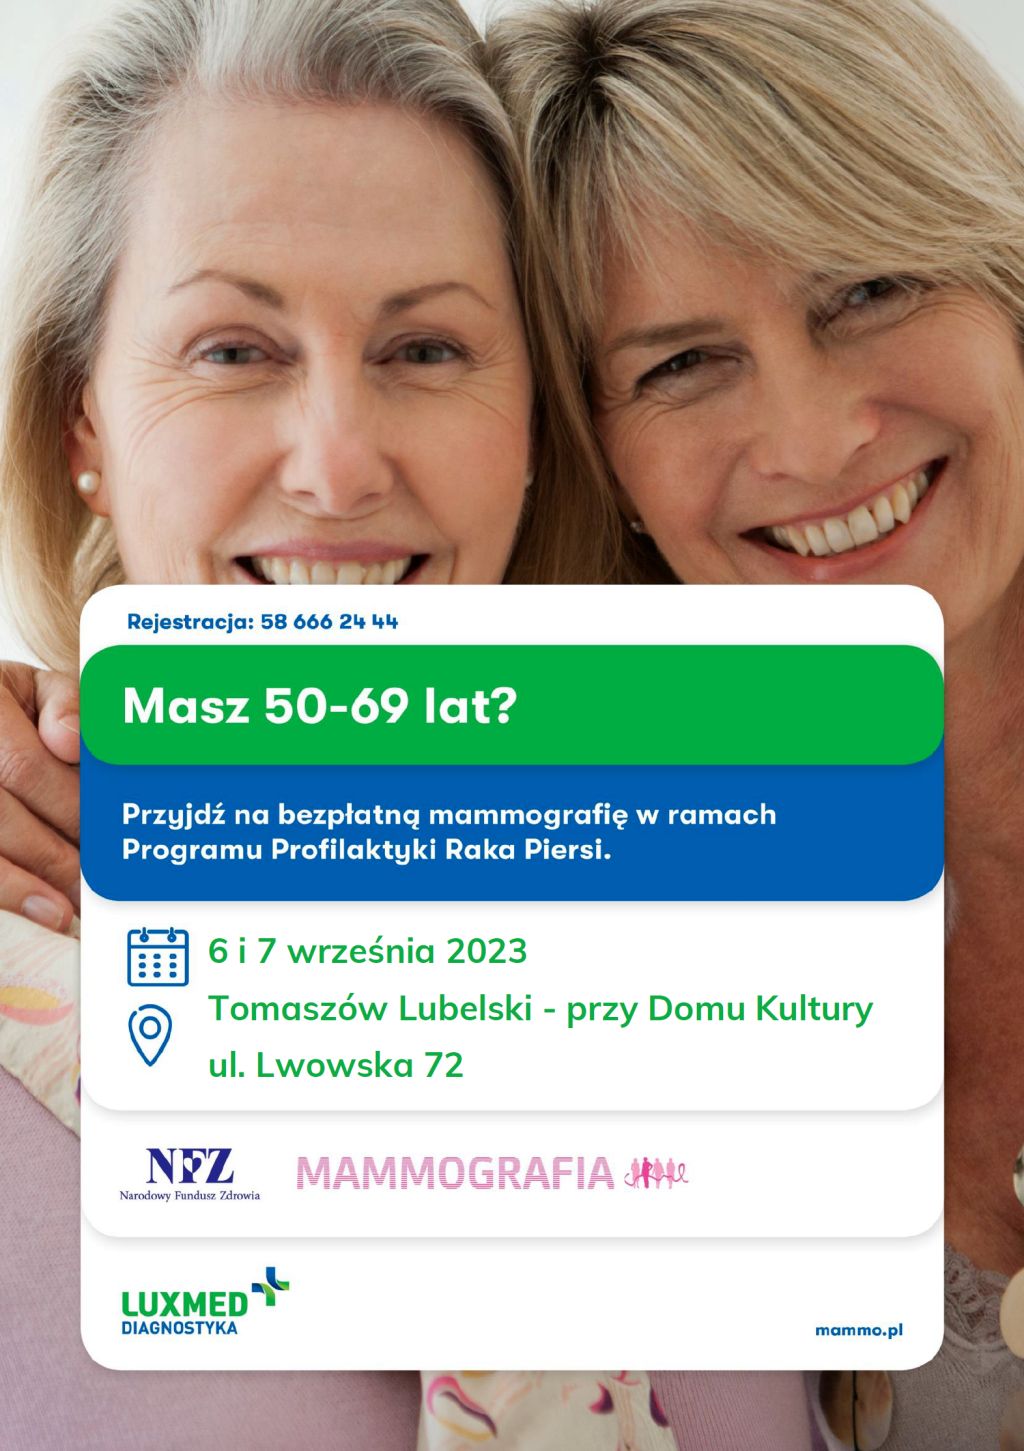 LUX MED Diagnostyka zaprasza na bezpłatne badania mammograficzne dla Pań w wieku 50-69 lat finansowane przez NFZ w ramach Programu Profilaktyki Raka Piersi